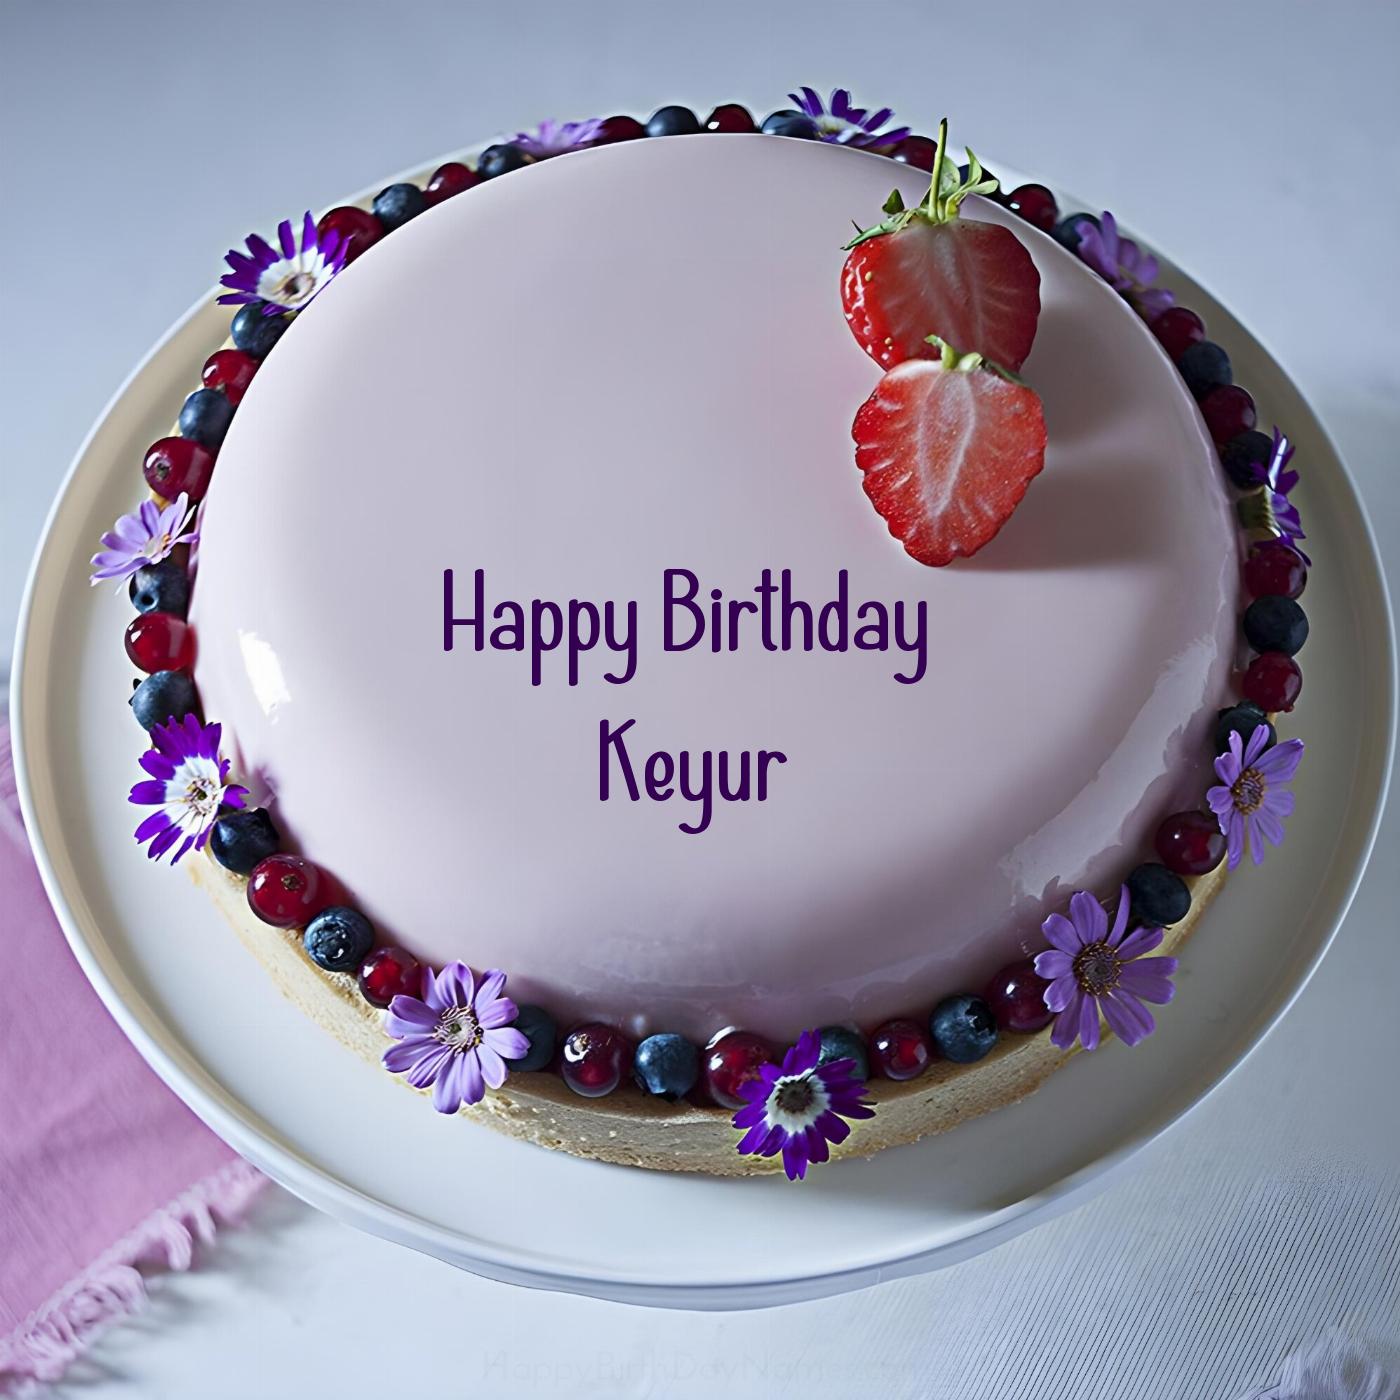 Happy Birthday Keyur Strawberry Flowers Cake